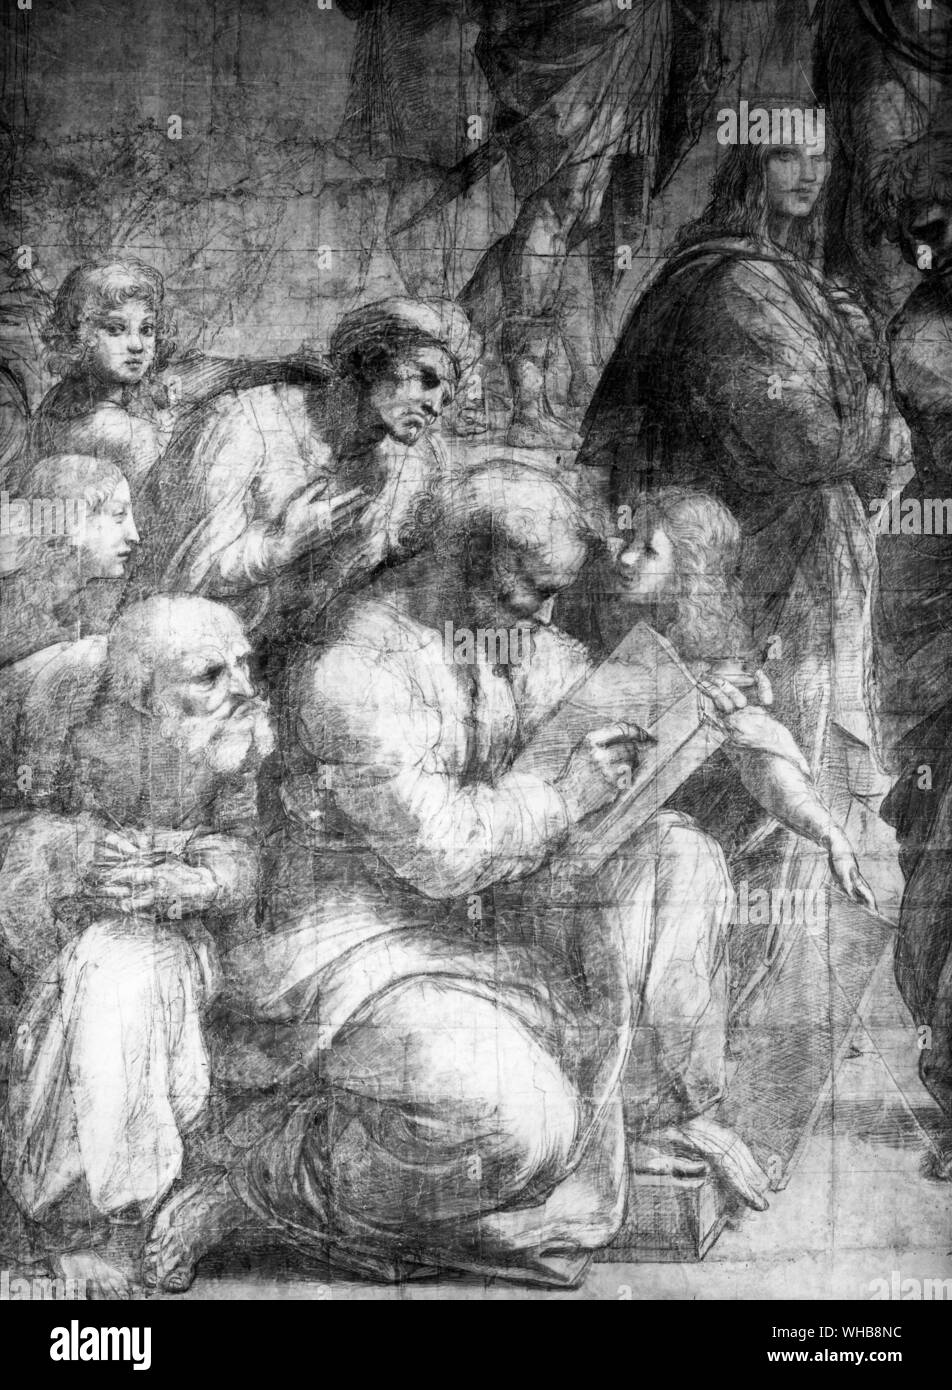 Rainbird Kunst - (Raphael (Raffaello Sanzio), Schule von Athen, 1509, Stanza della Segnatura, Päpstlichen Palast, Rom) (Linke untere Teil von größeren Malerei).. Die Schule von Athen oder Scuola di Atene in Italienisch ist eines der berühmtesten Gemälde der italienischen Renaissance Künstler Raphael. Es wurde zwischen 1509 und 1510 als Teil von Raphael der Kommission mit Fresken, die Zimmer, die jetzt als die Stanze di Raffaello bekannt, im Apostolischen Palast im Vatikan zu verzieren gemalt. Die Stanza della Segnatura war der Erste der Räume eingerichtet werden, und die Schule von Athen die zweite Malerei Stockfoto